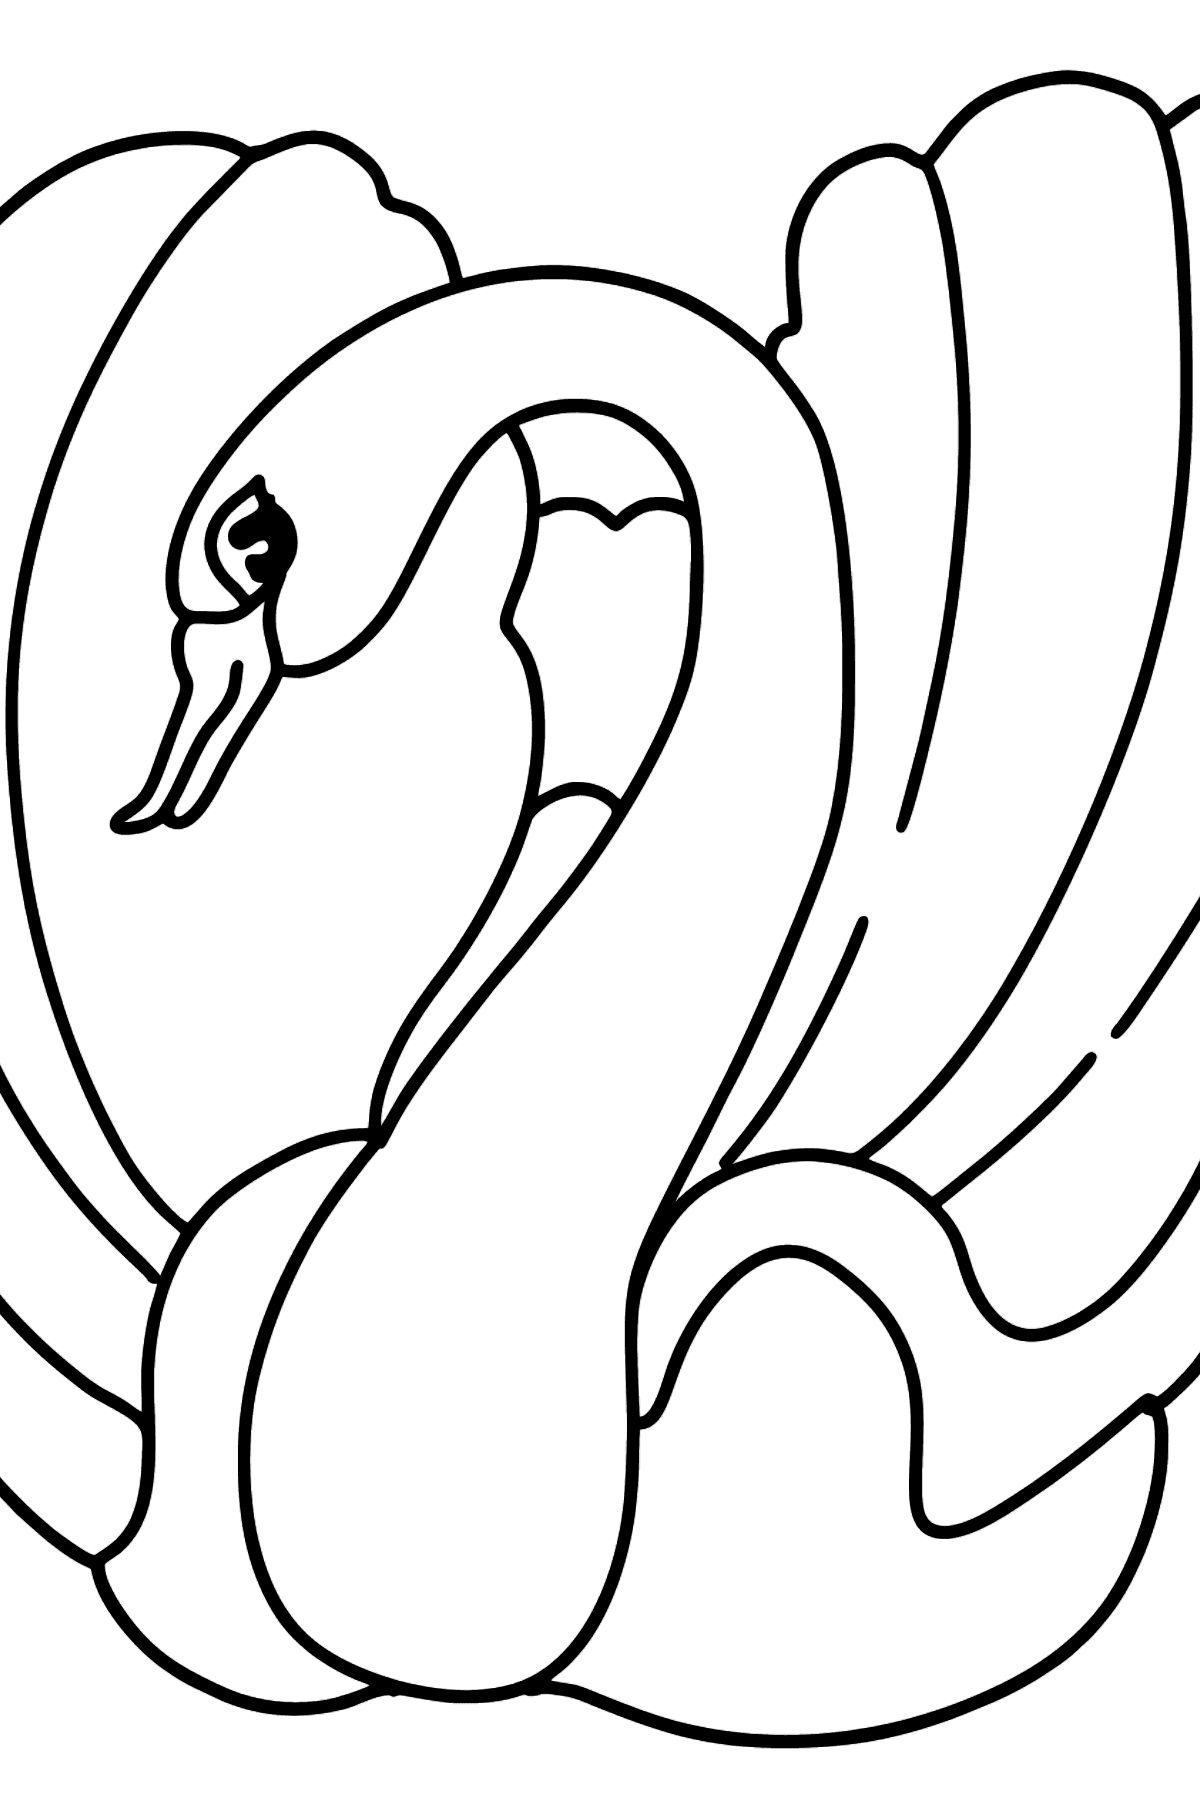 Dibujo de cisne negro para colorear - Dibujos para Colorear para Niños